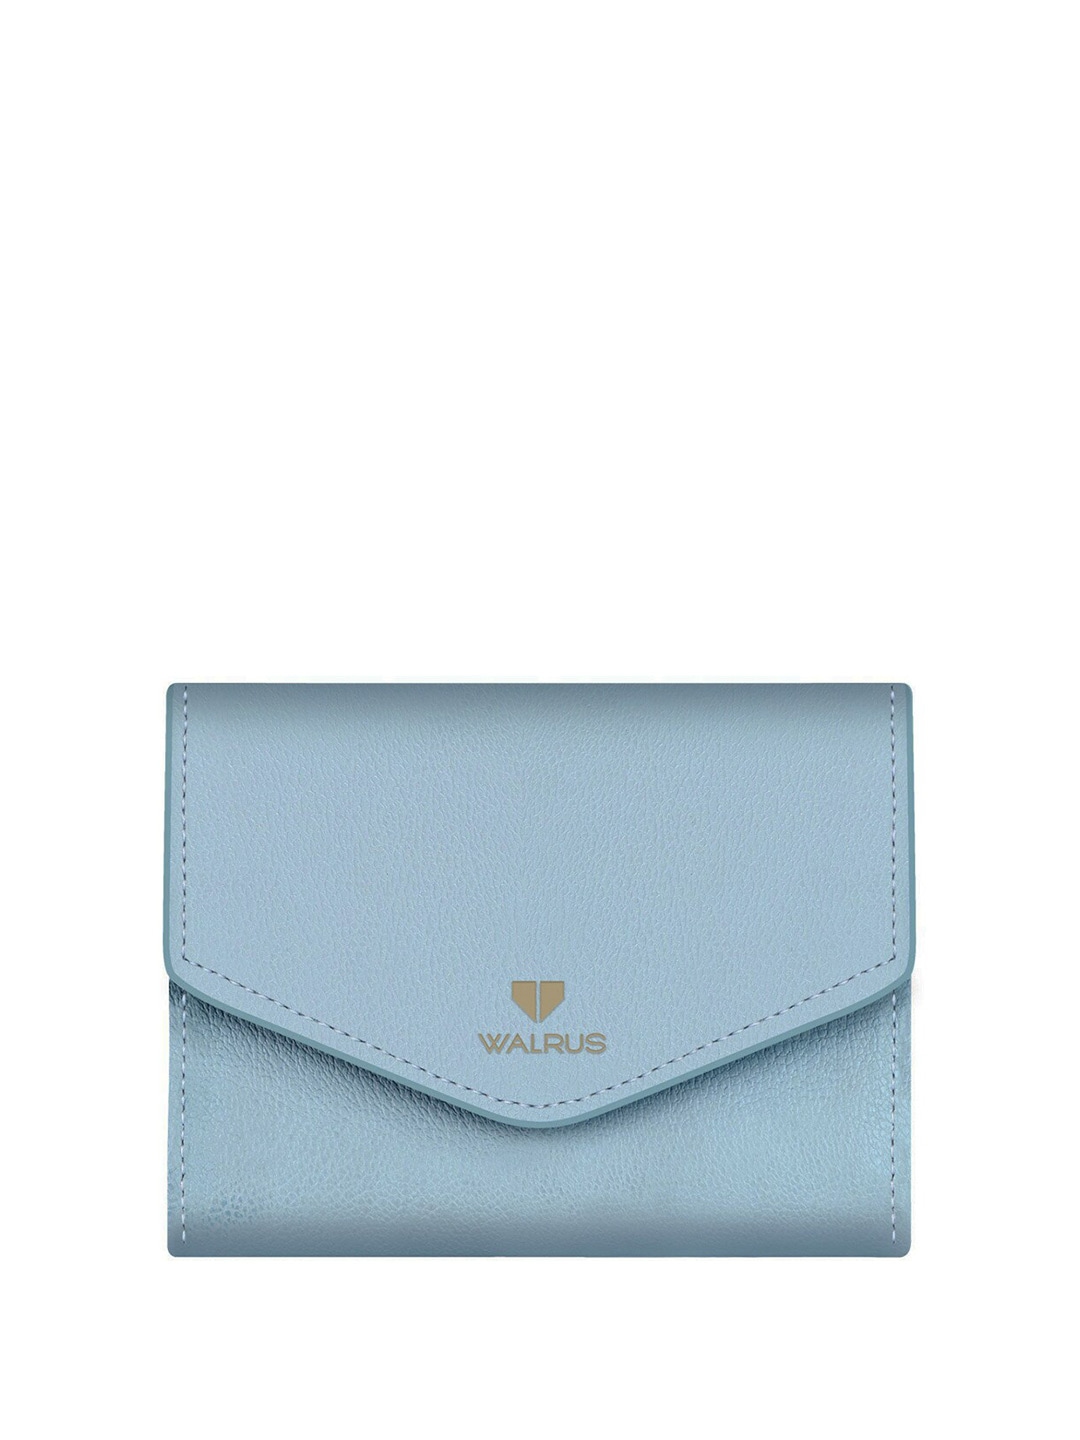 

Walrus Women Vegan Leather Three Fold Wallet, Blue